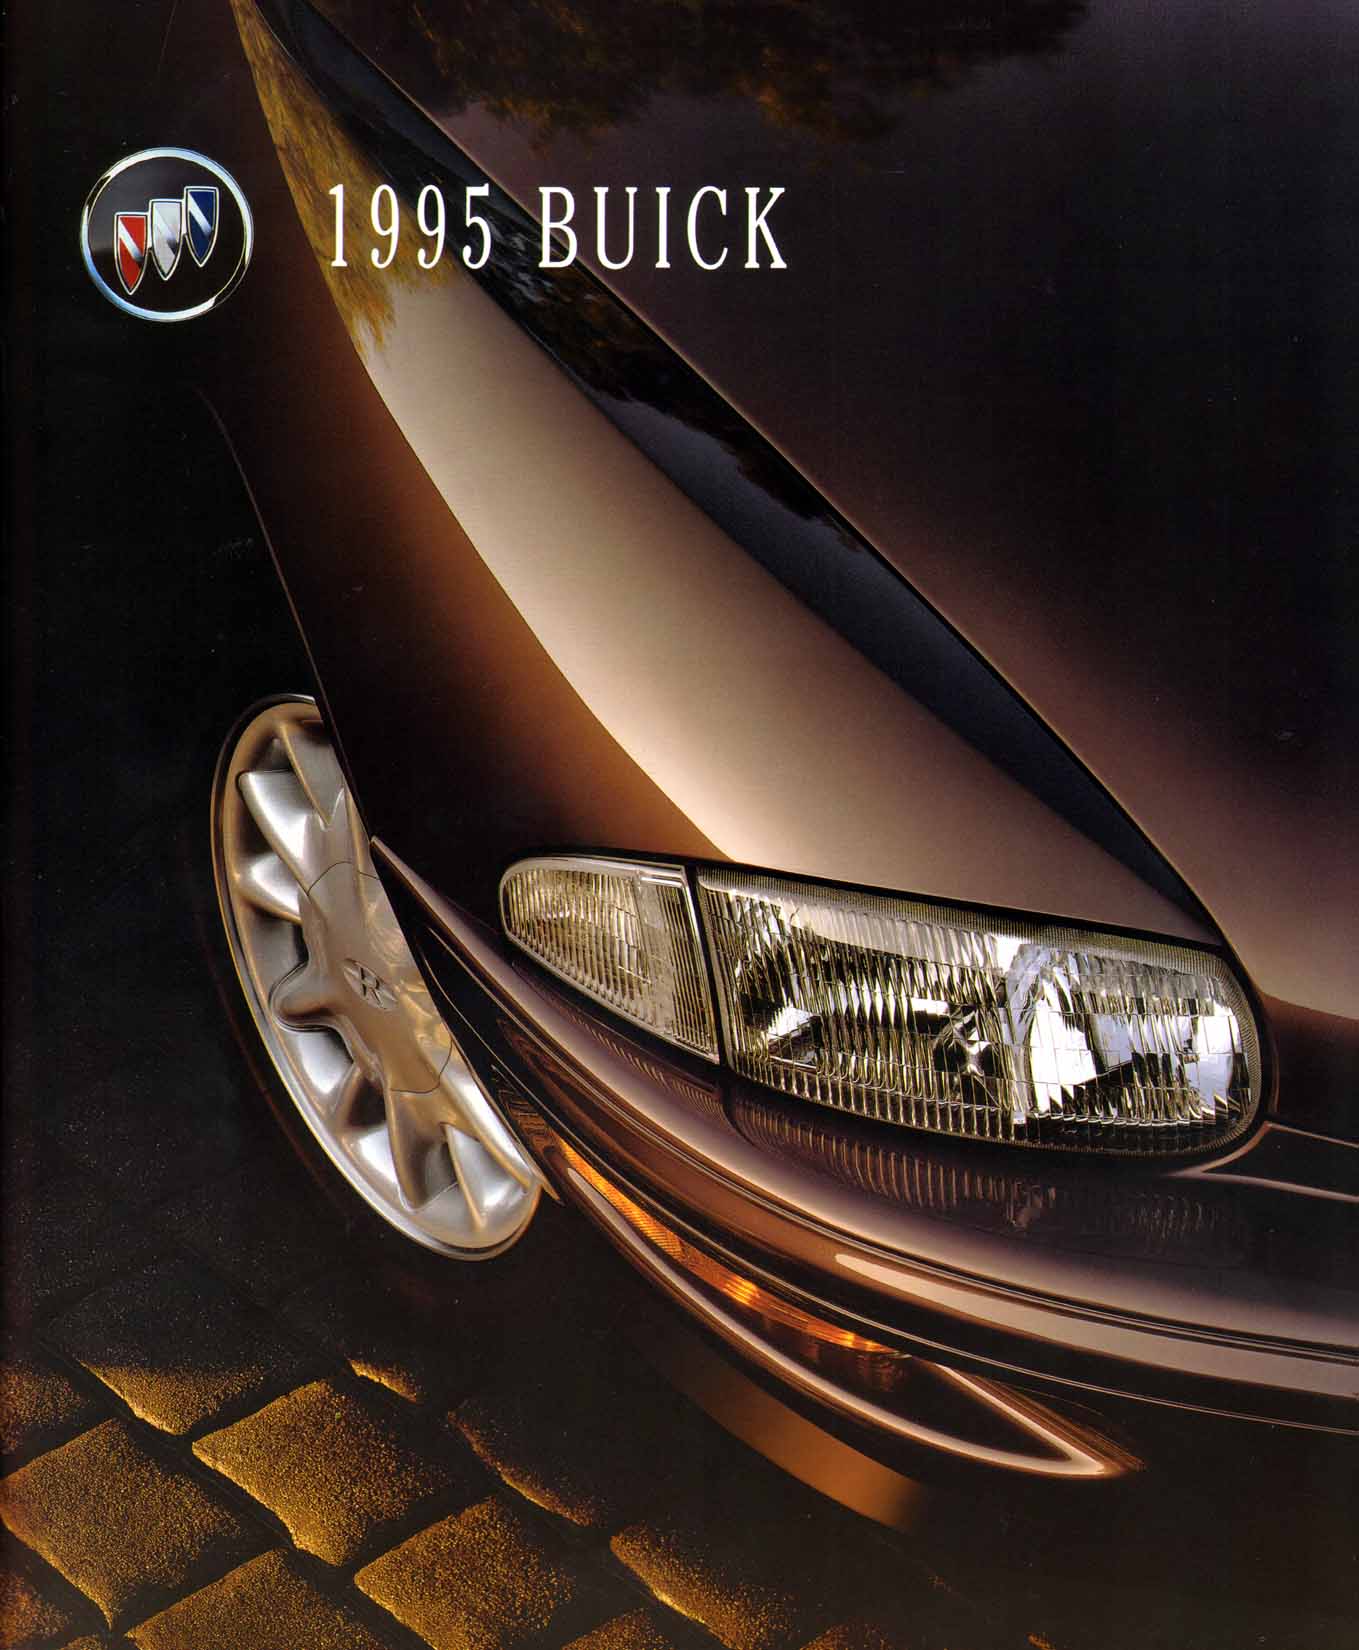 1995 Buick Full Line Prestige-00